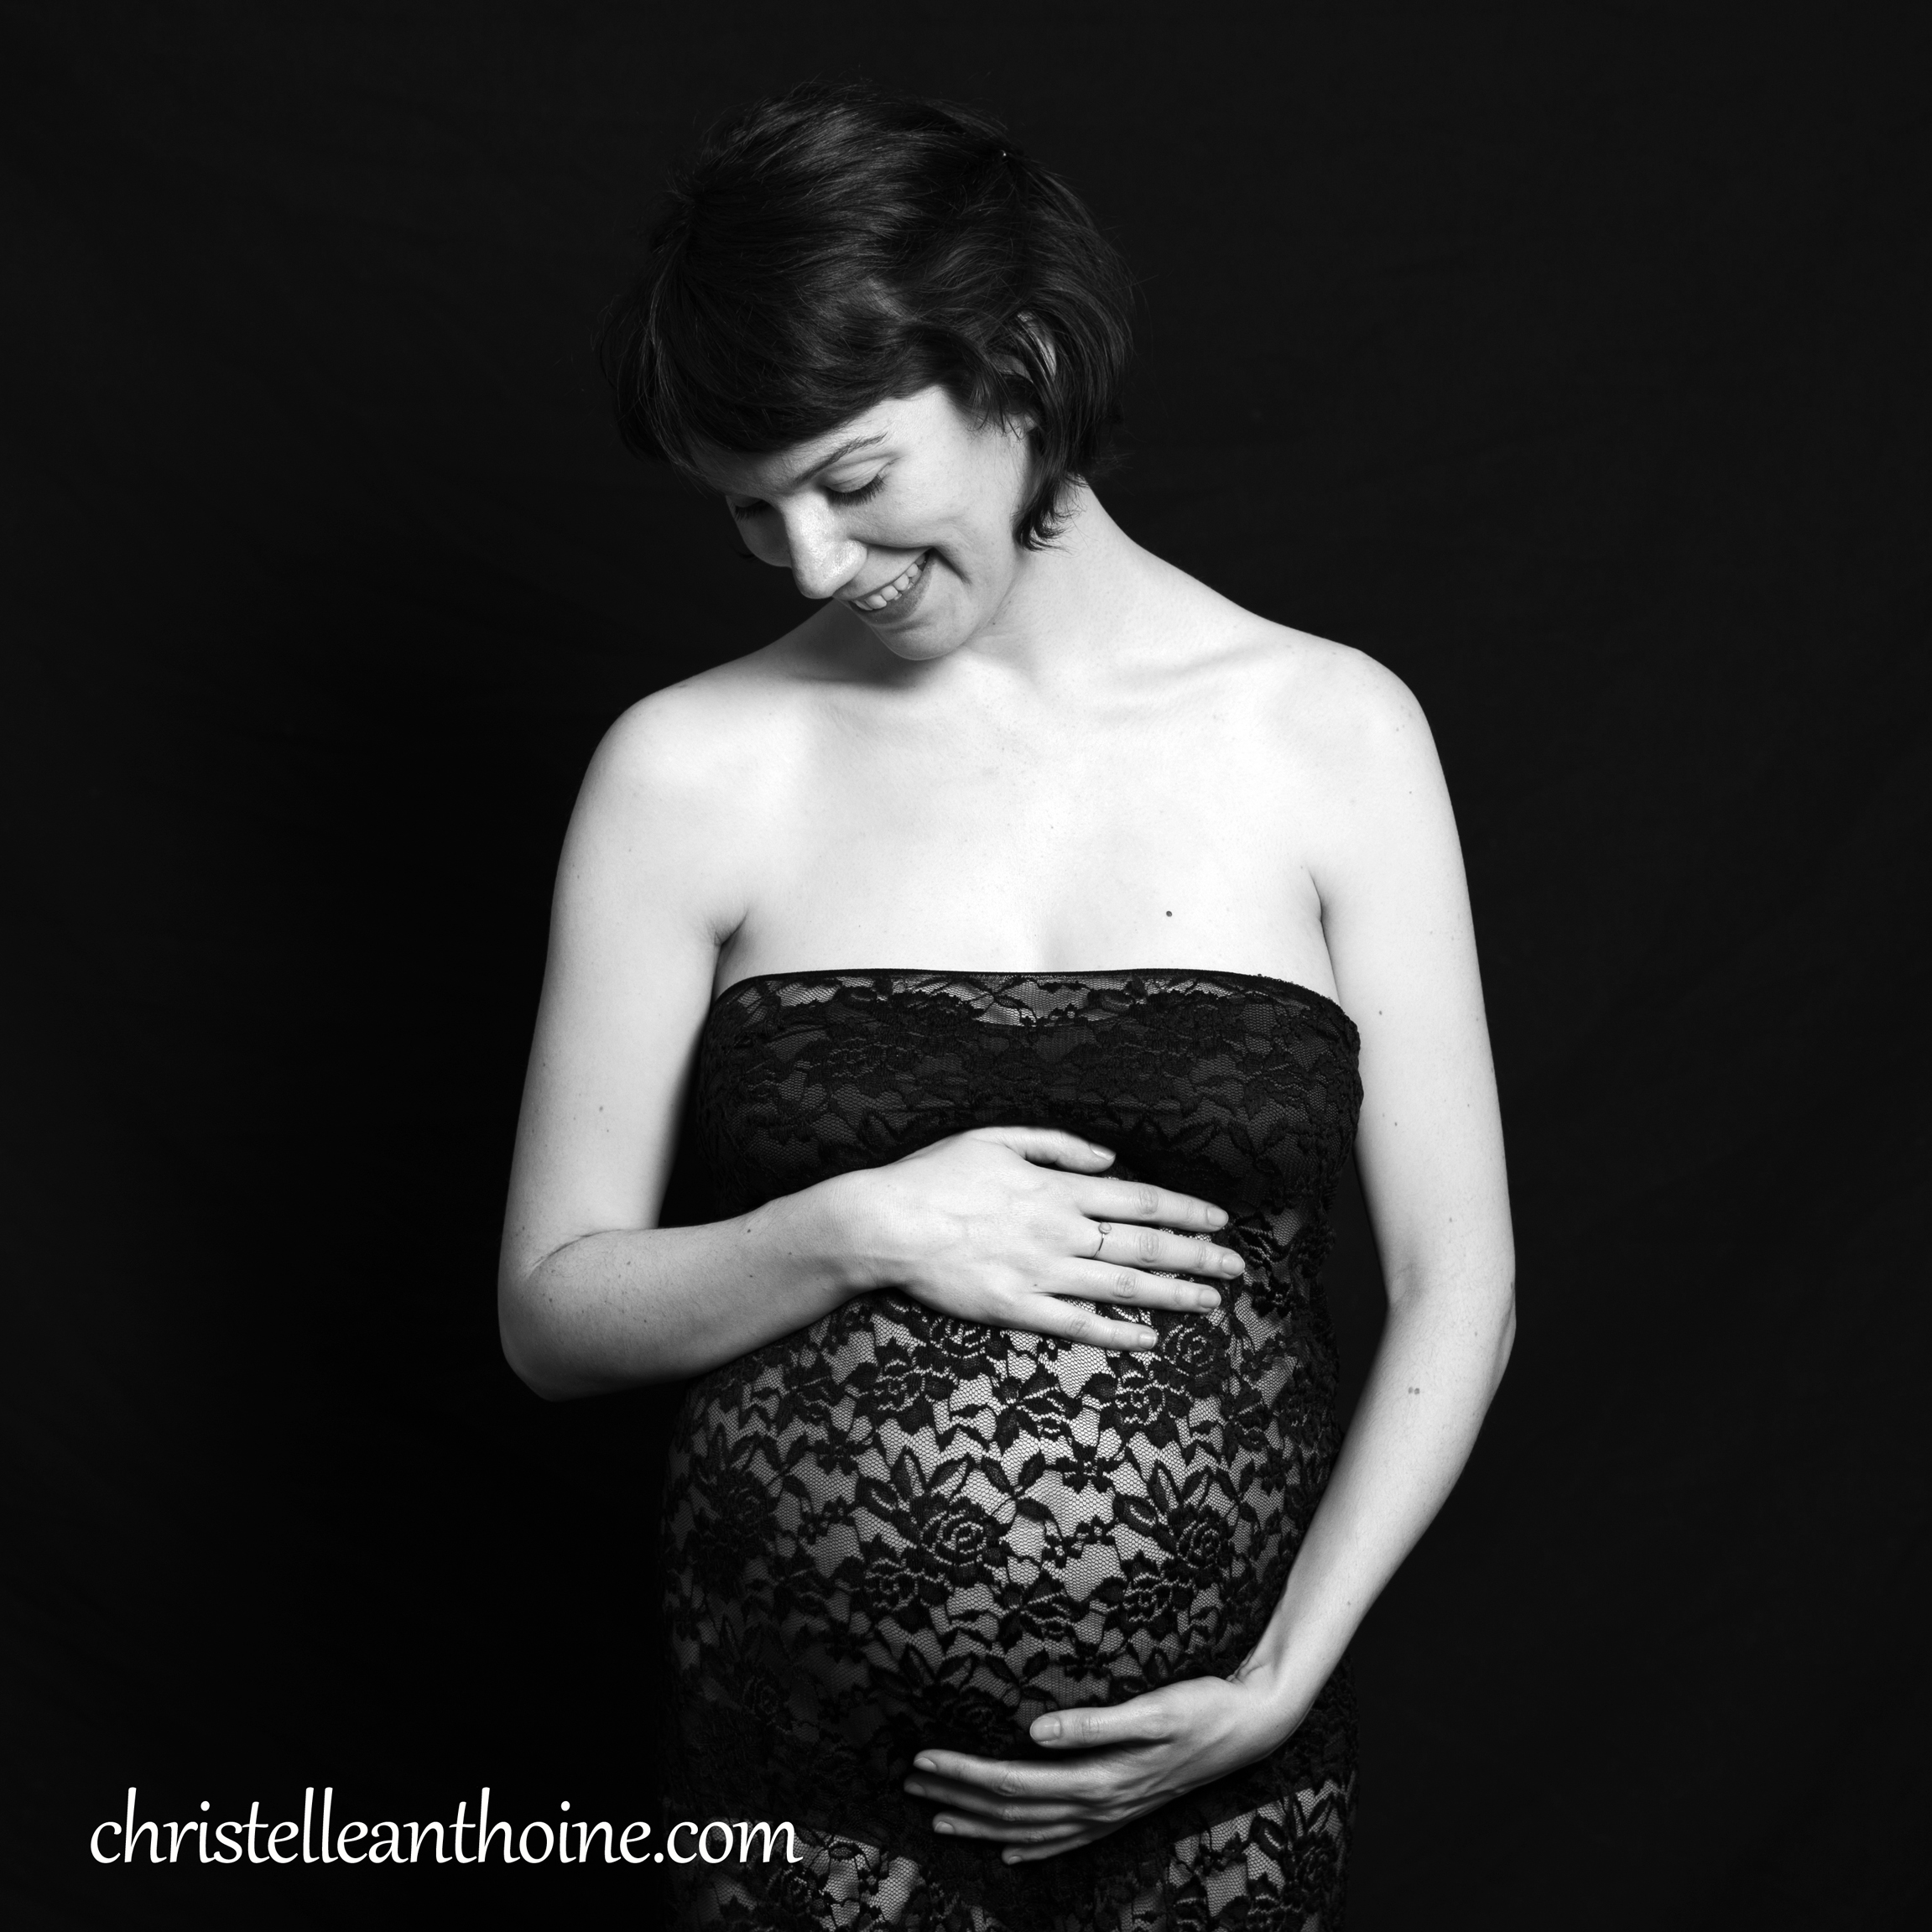 Photographe bretagne grossesse femme enceinte nouveau né enfant cotes darmor